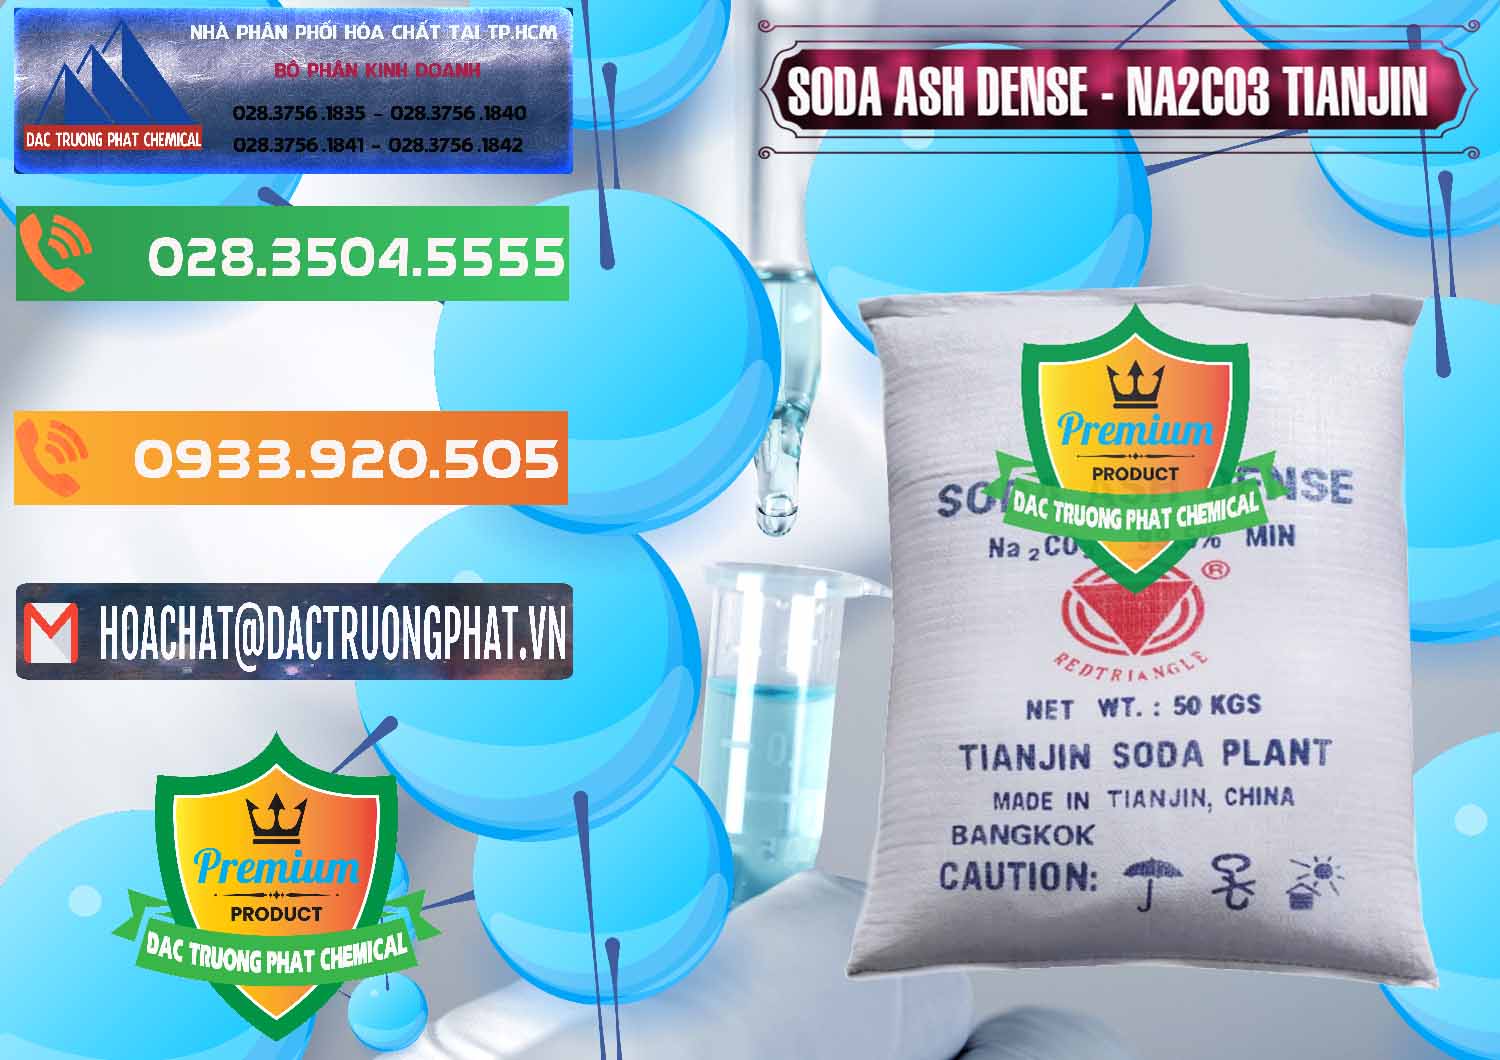 Cty chuyên bán _ cung cấp Soda Ash Dense - NA2CO3 Tianjin Trung Quốc China - 0336 - Đơn vị phân phối và cung cấp hóa chất tại TP.HCM - hoachatxulynuoc.com.vn